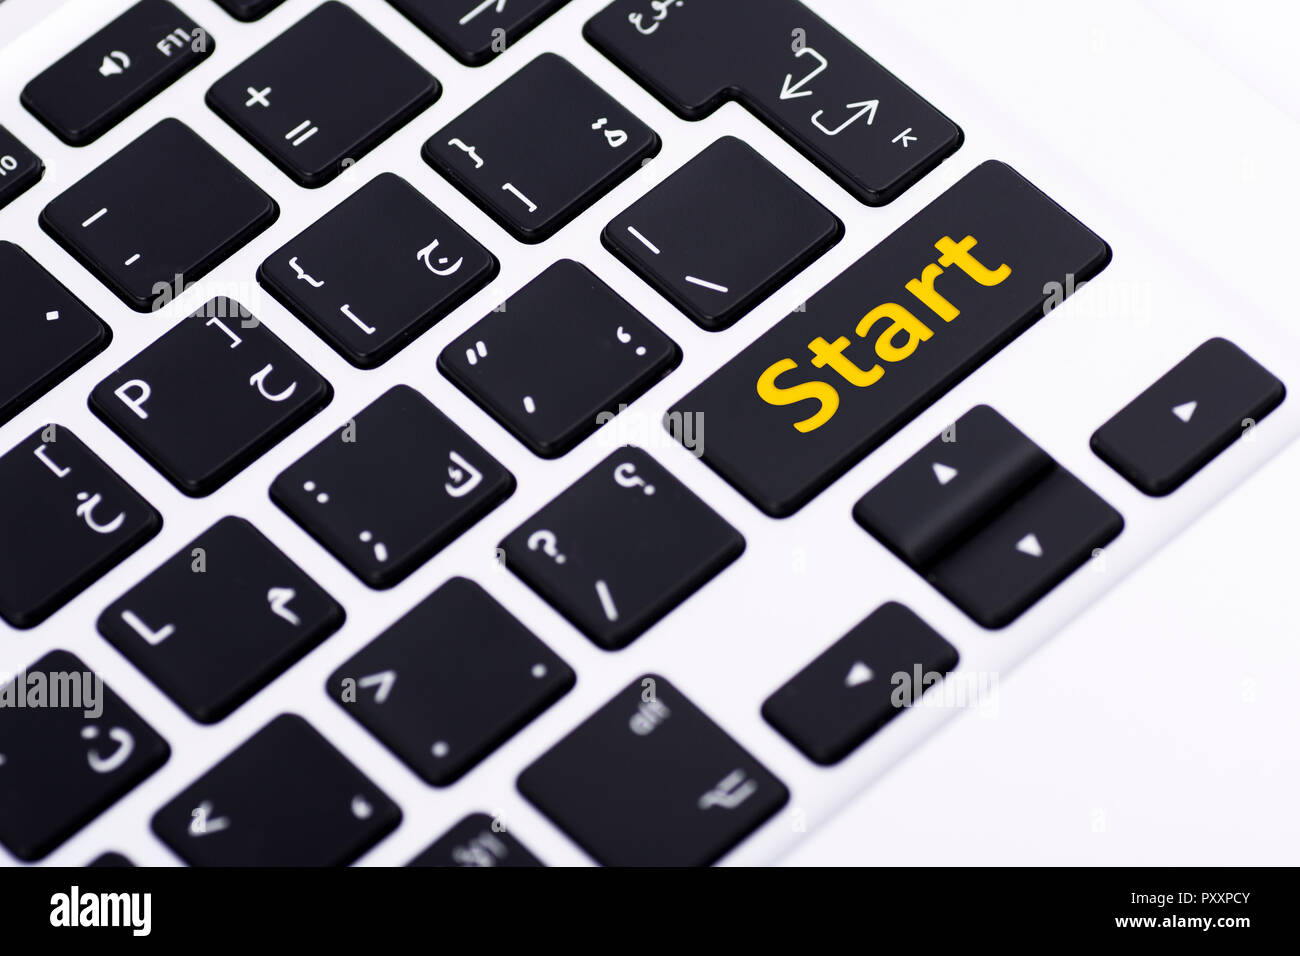 Start on keyboard button Stock Photo